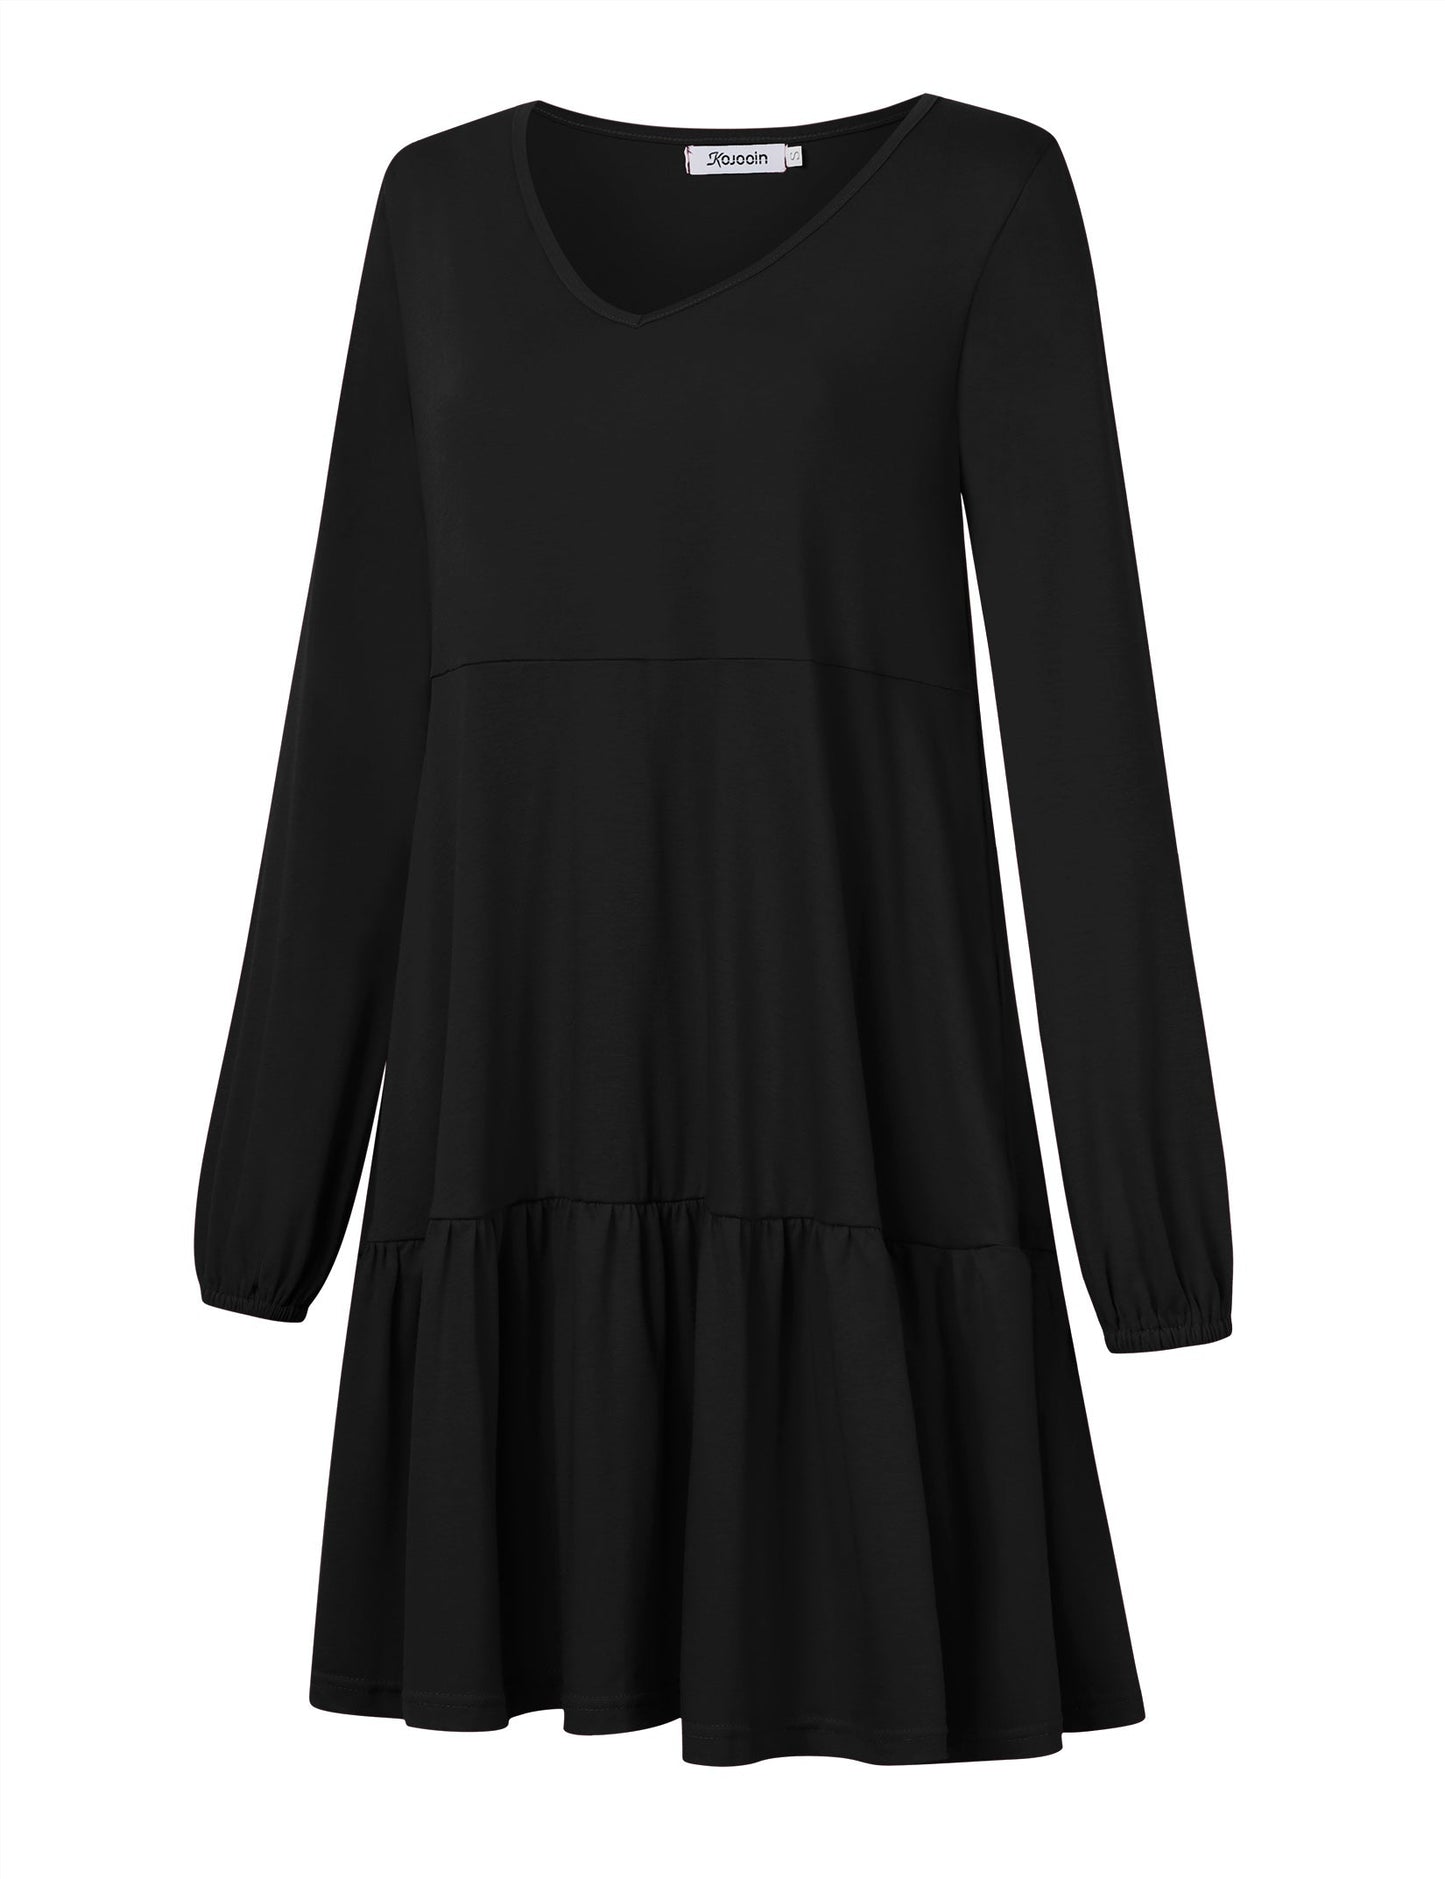 YESFASHION Women's V Neck Layered Dress Long Sleeve Dress Black